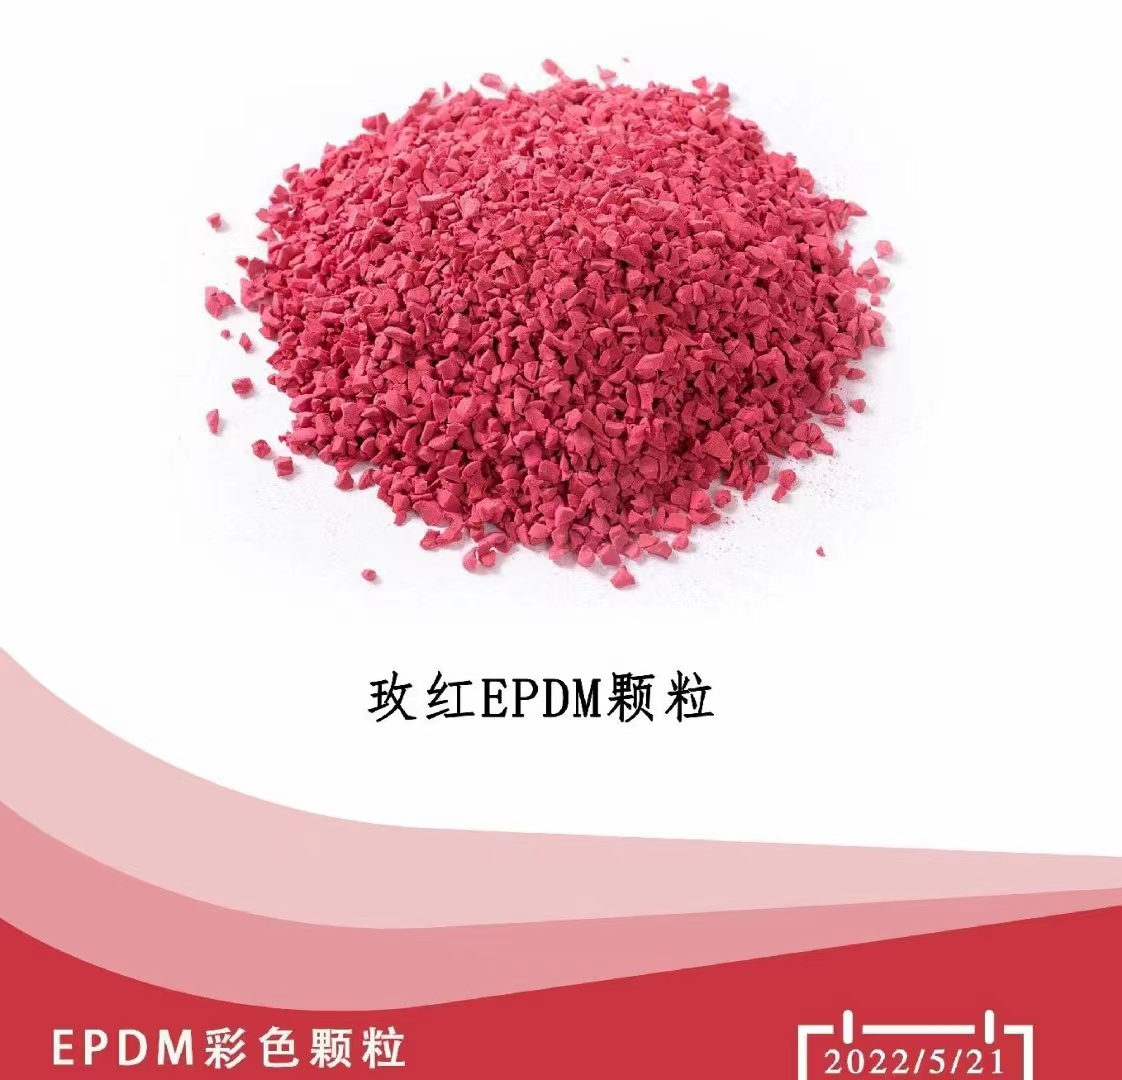 新星体育生产epdm塑胶跑道黑颗粒1.8元每公斤